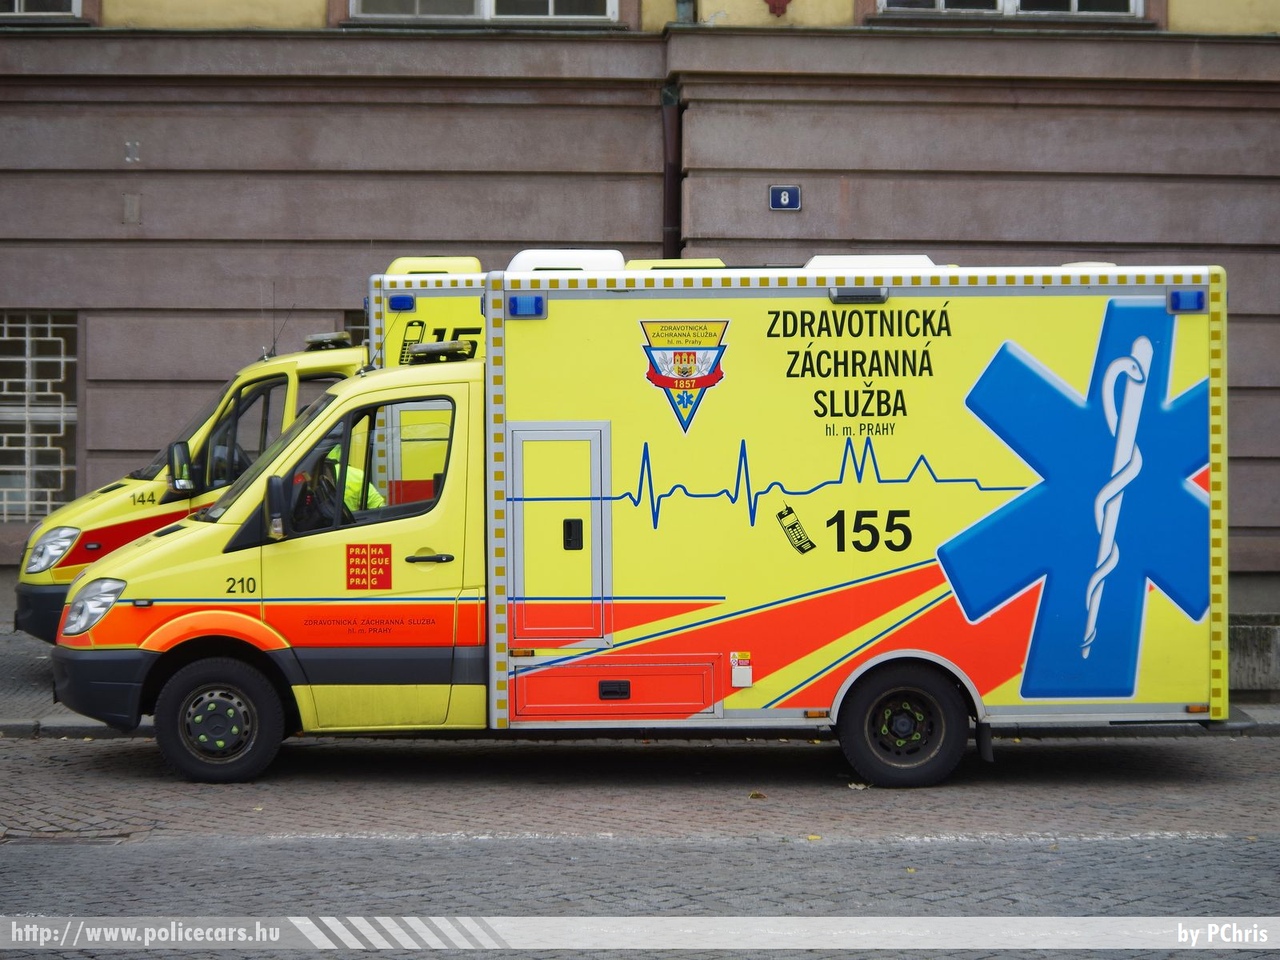 Mercedes Sprinter II, fotó: PChris
Keywords: cseh Csehország mentő mentőautó Czech ambulance